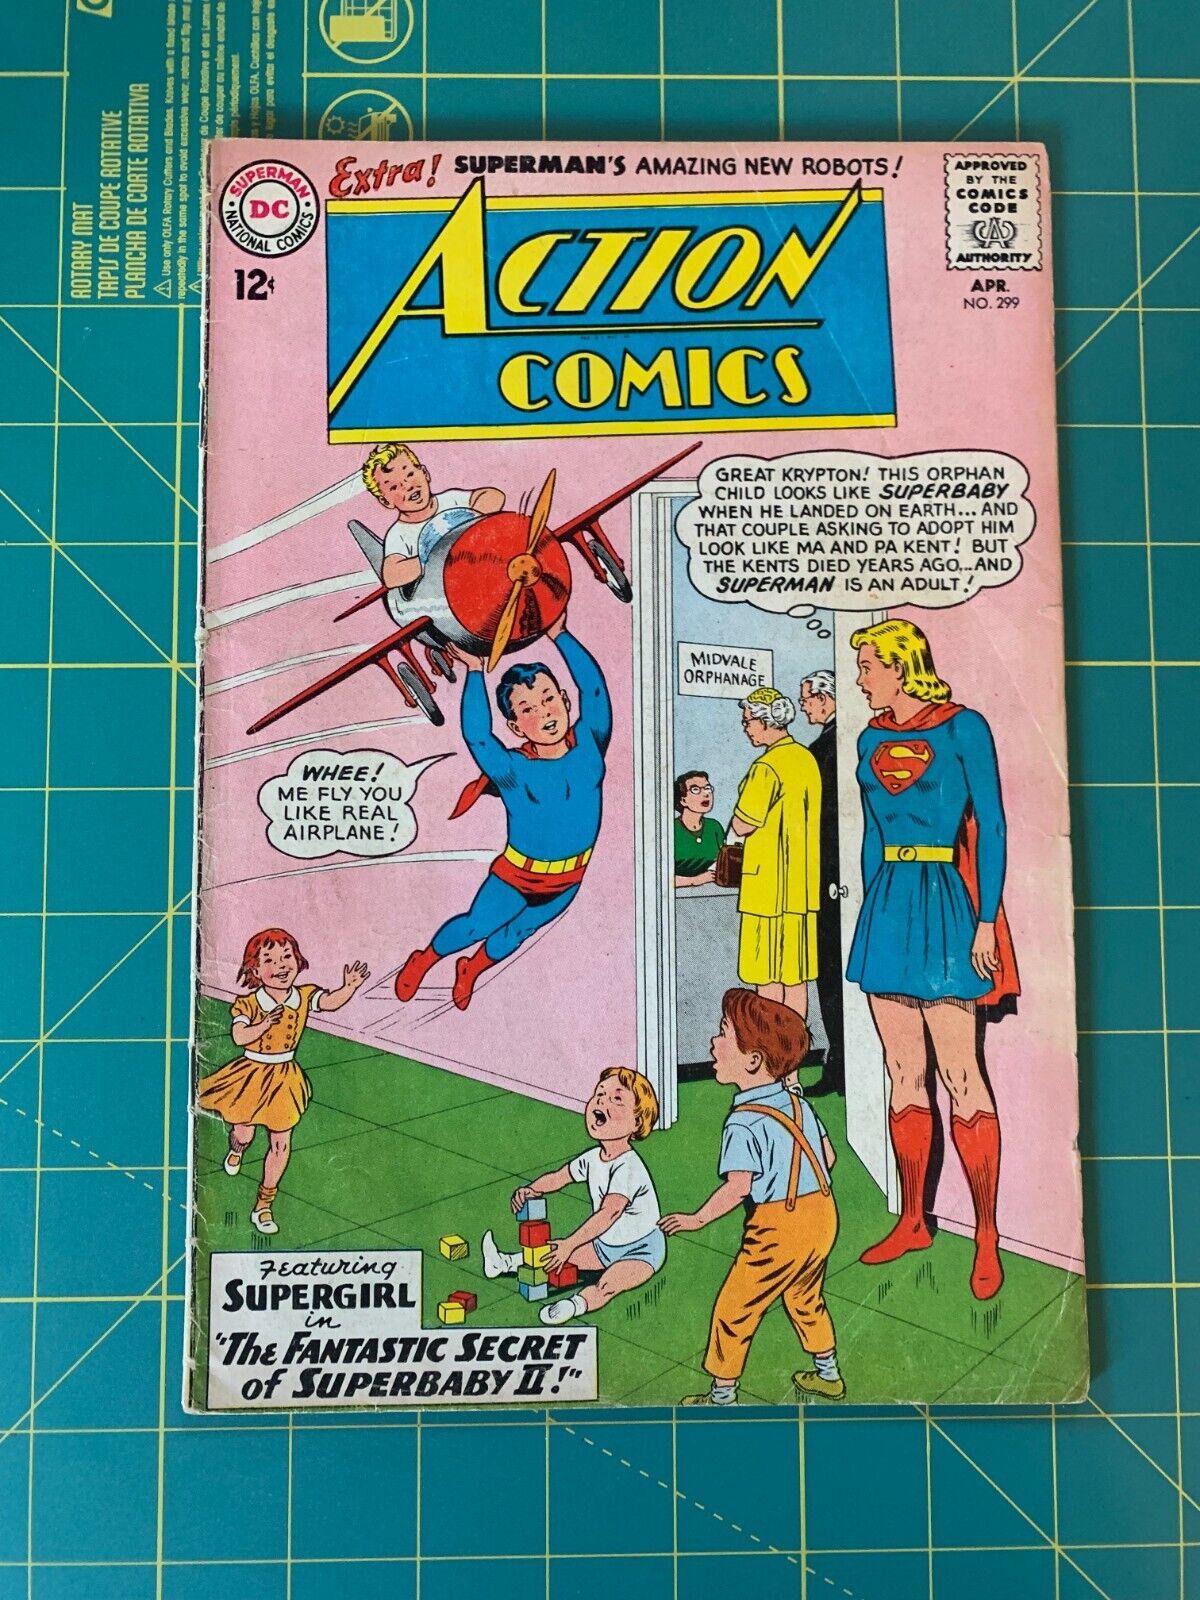 Action Comics #299 - Apr 1963 - Vol.1 - DC - Silver Age - 4.0 VG